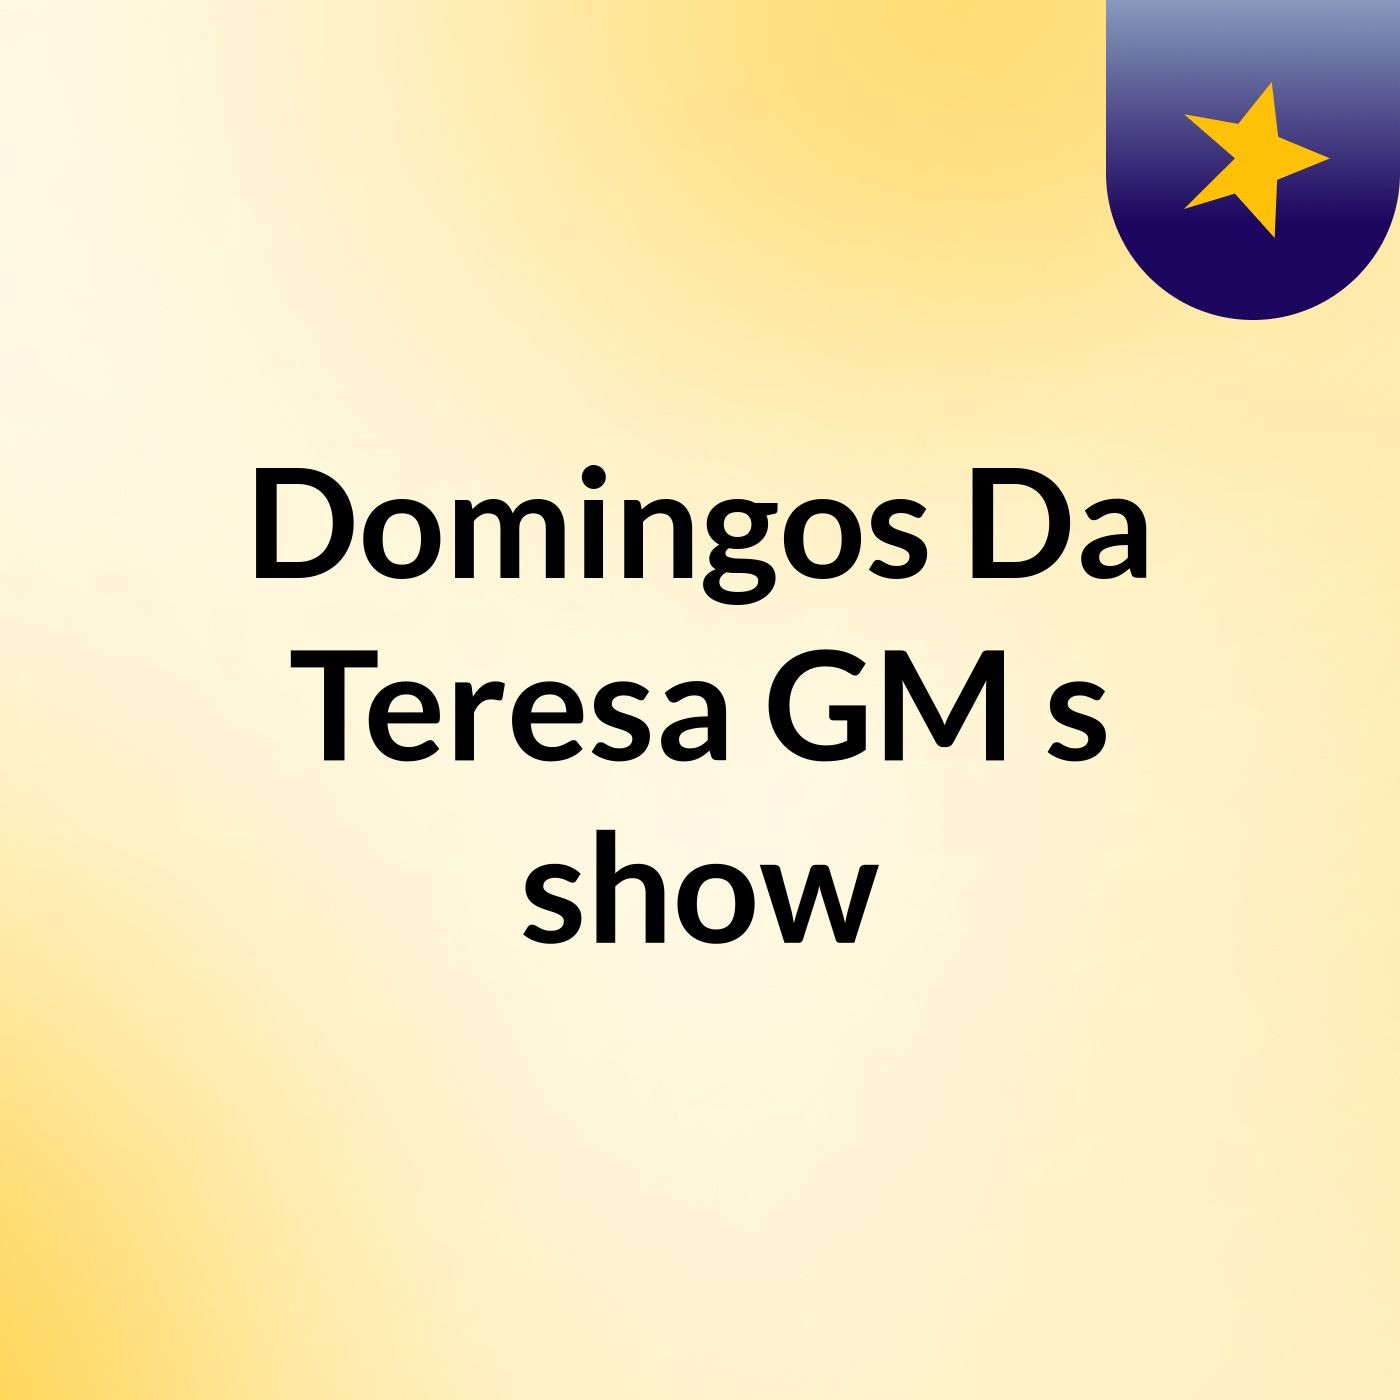 Domingos Da Teresa GM's show